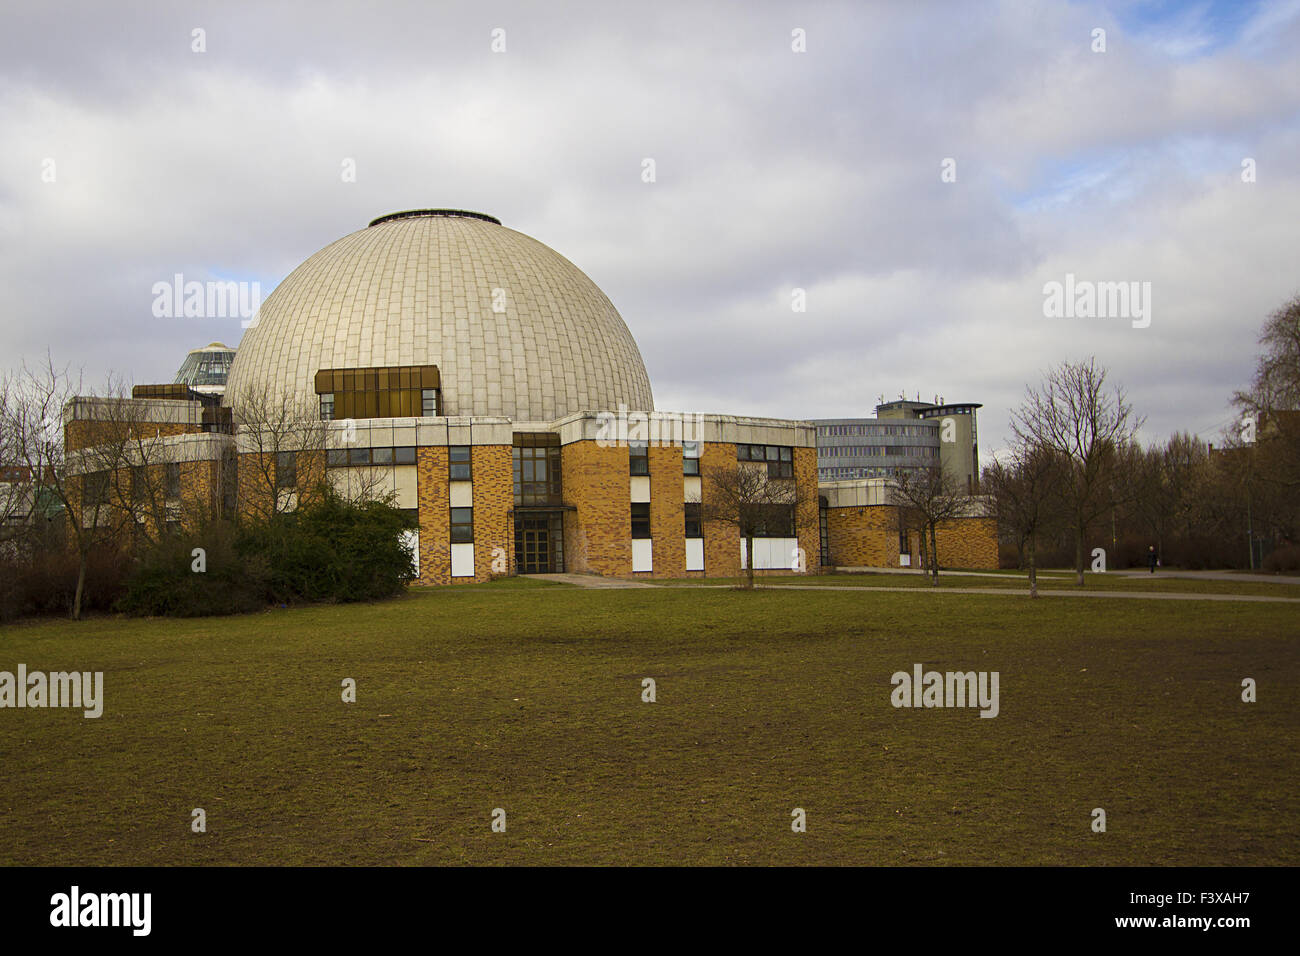 zeiss planetarium in berlin prenzlauer berg Stock Photo